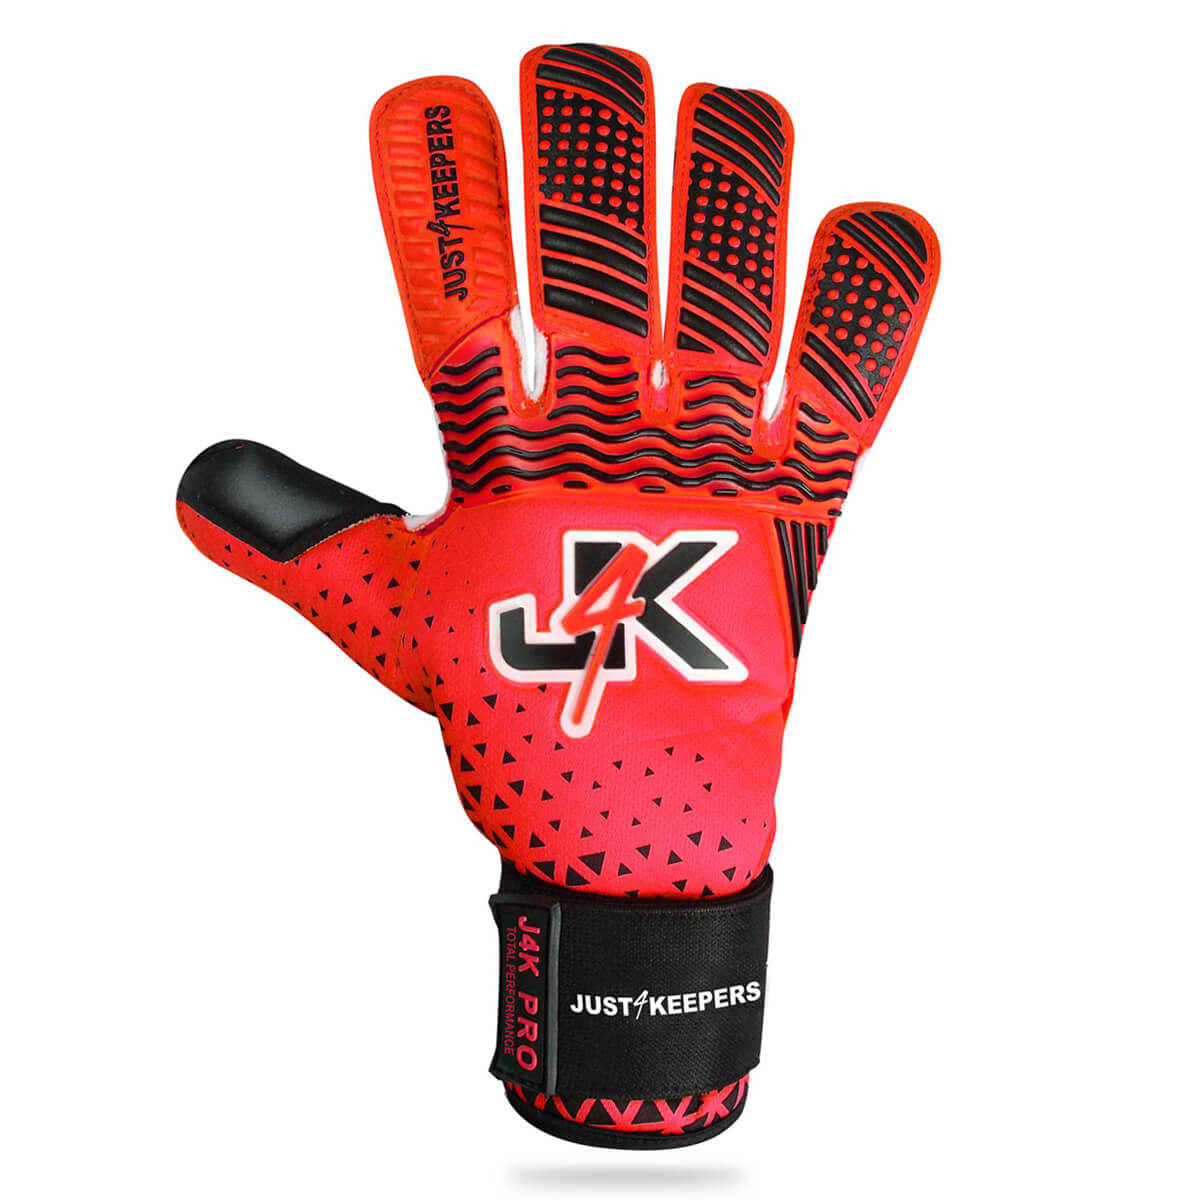 J4K PRO REVO HYBRID Adult & Junior Goalkeeper Gloves 